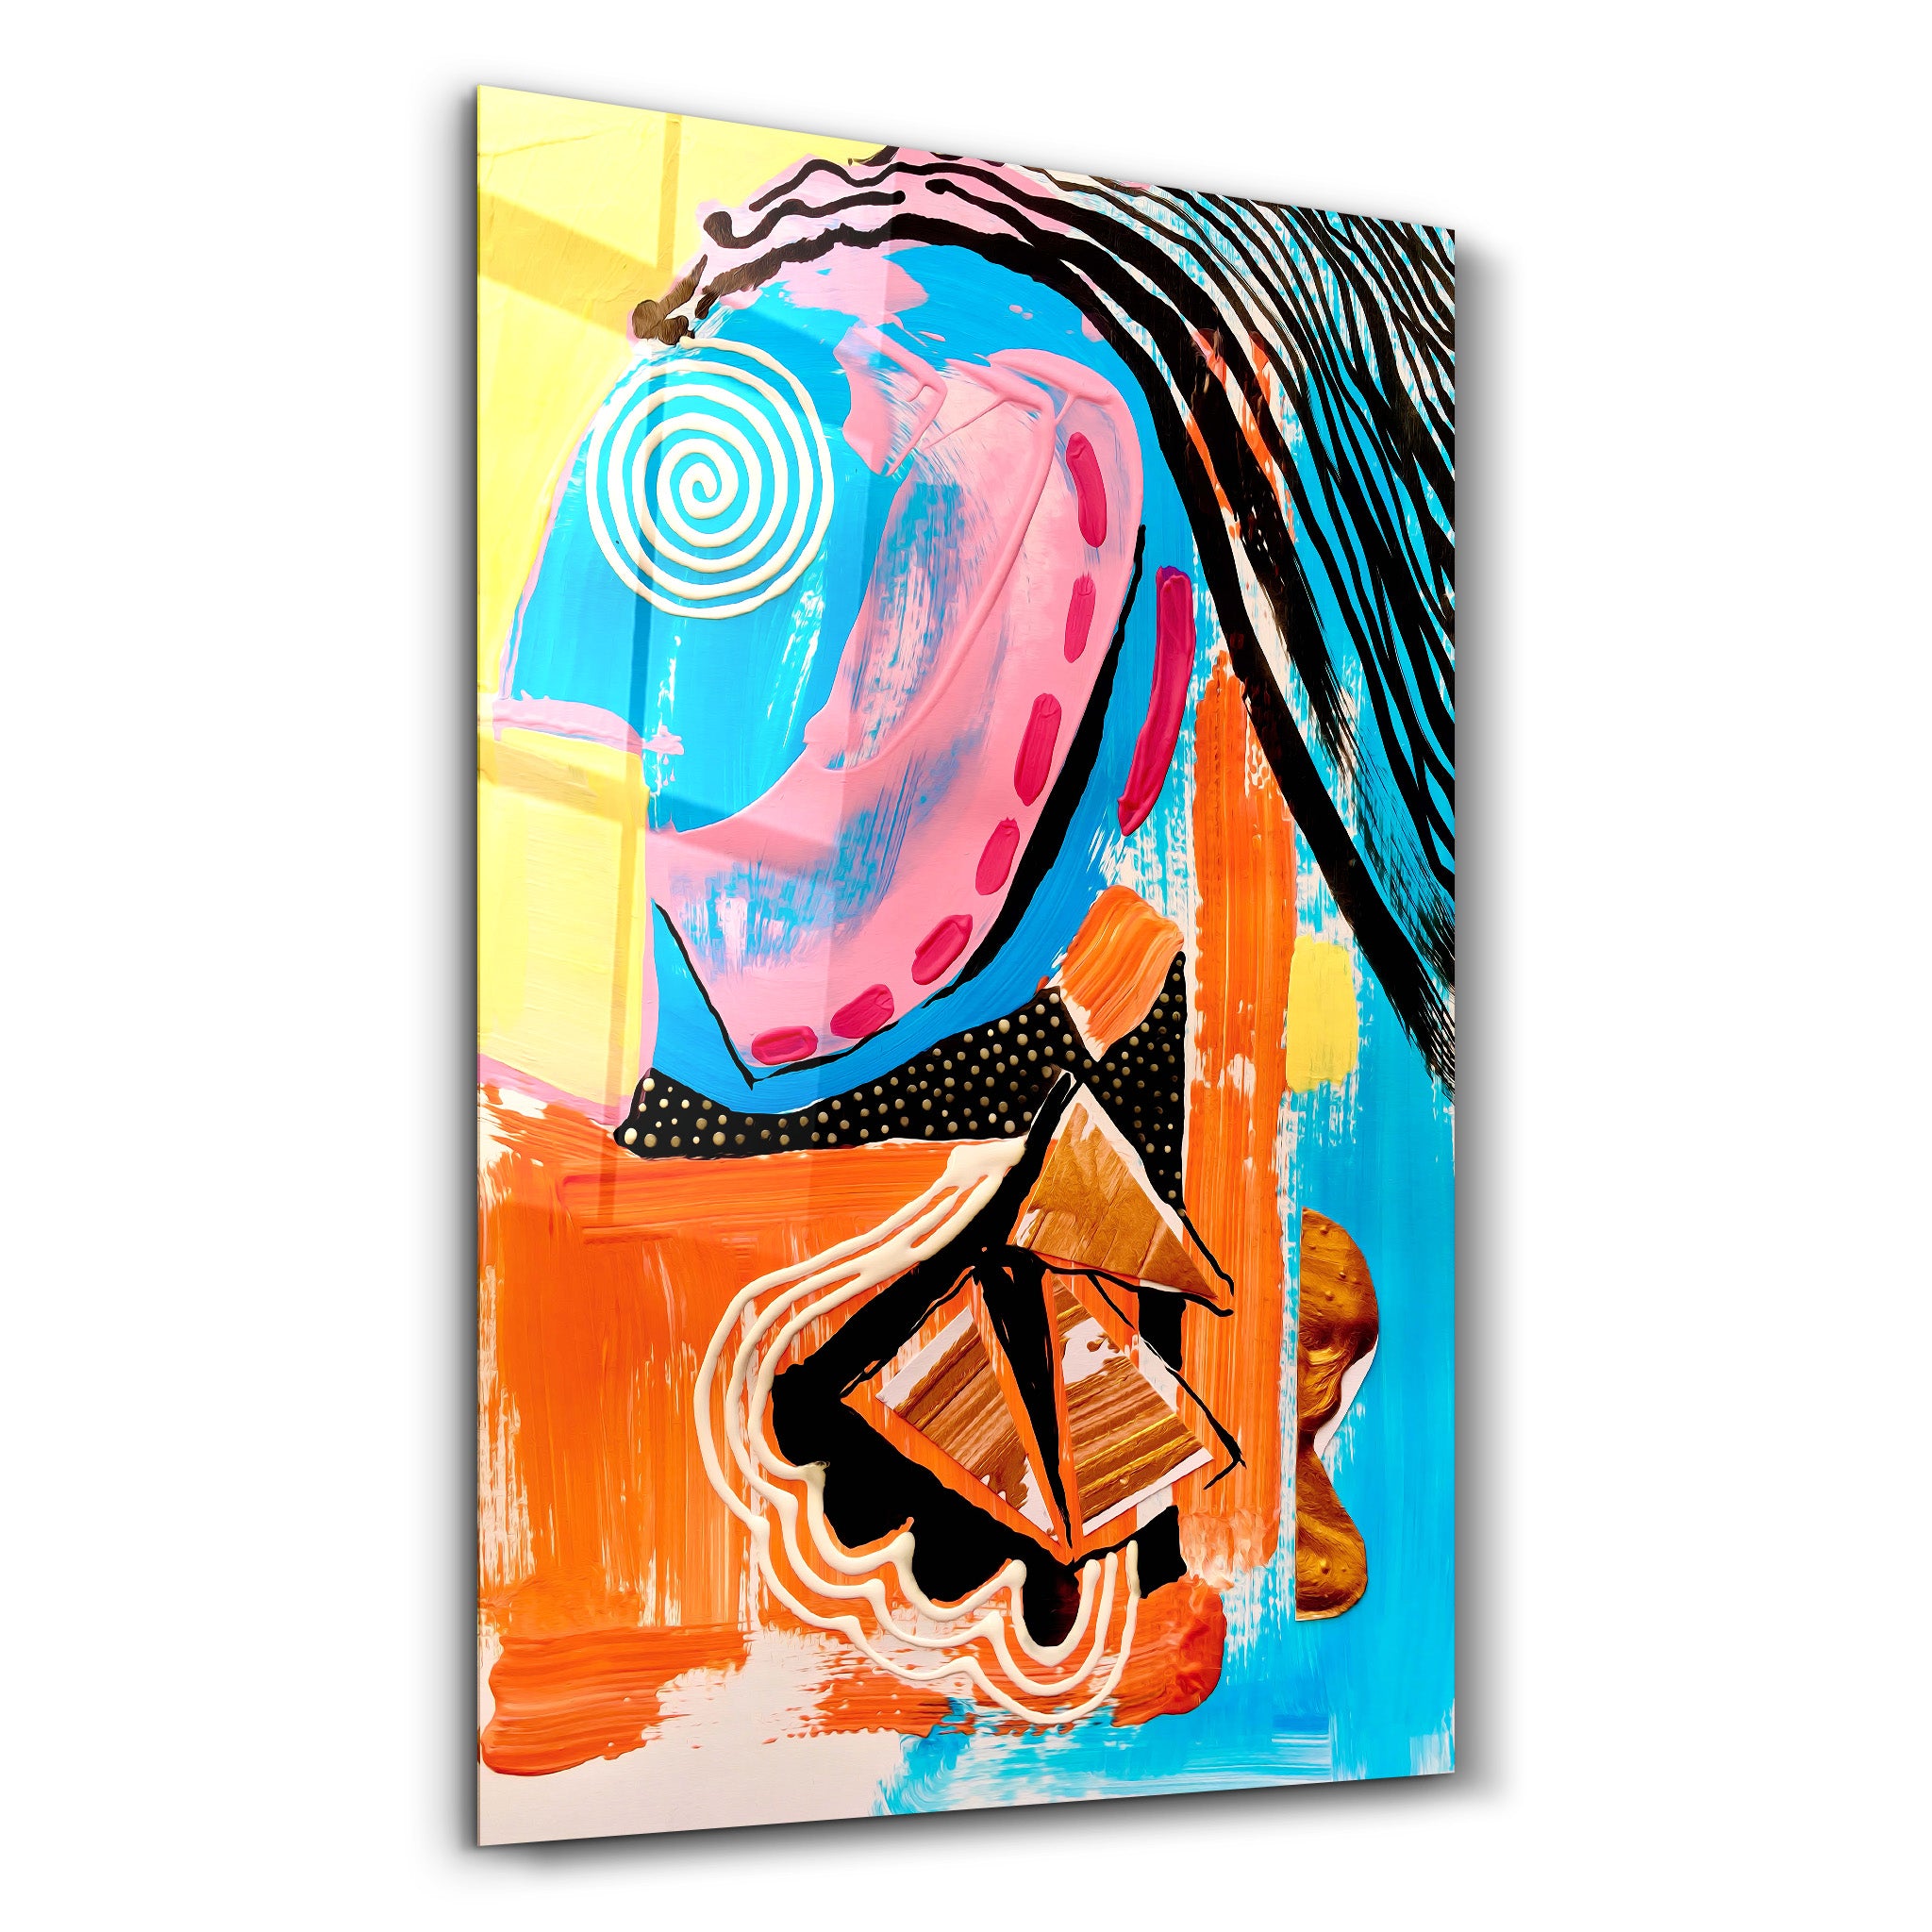 ・"Abstract Weird Face Oil Painting"・Glass Wall Art - ArtDesigna Glass Printing Wall Art